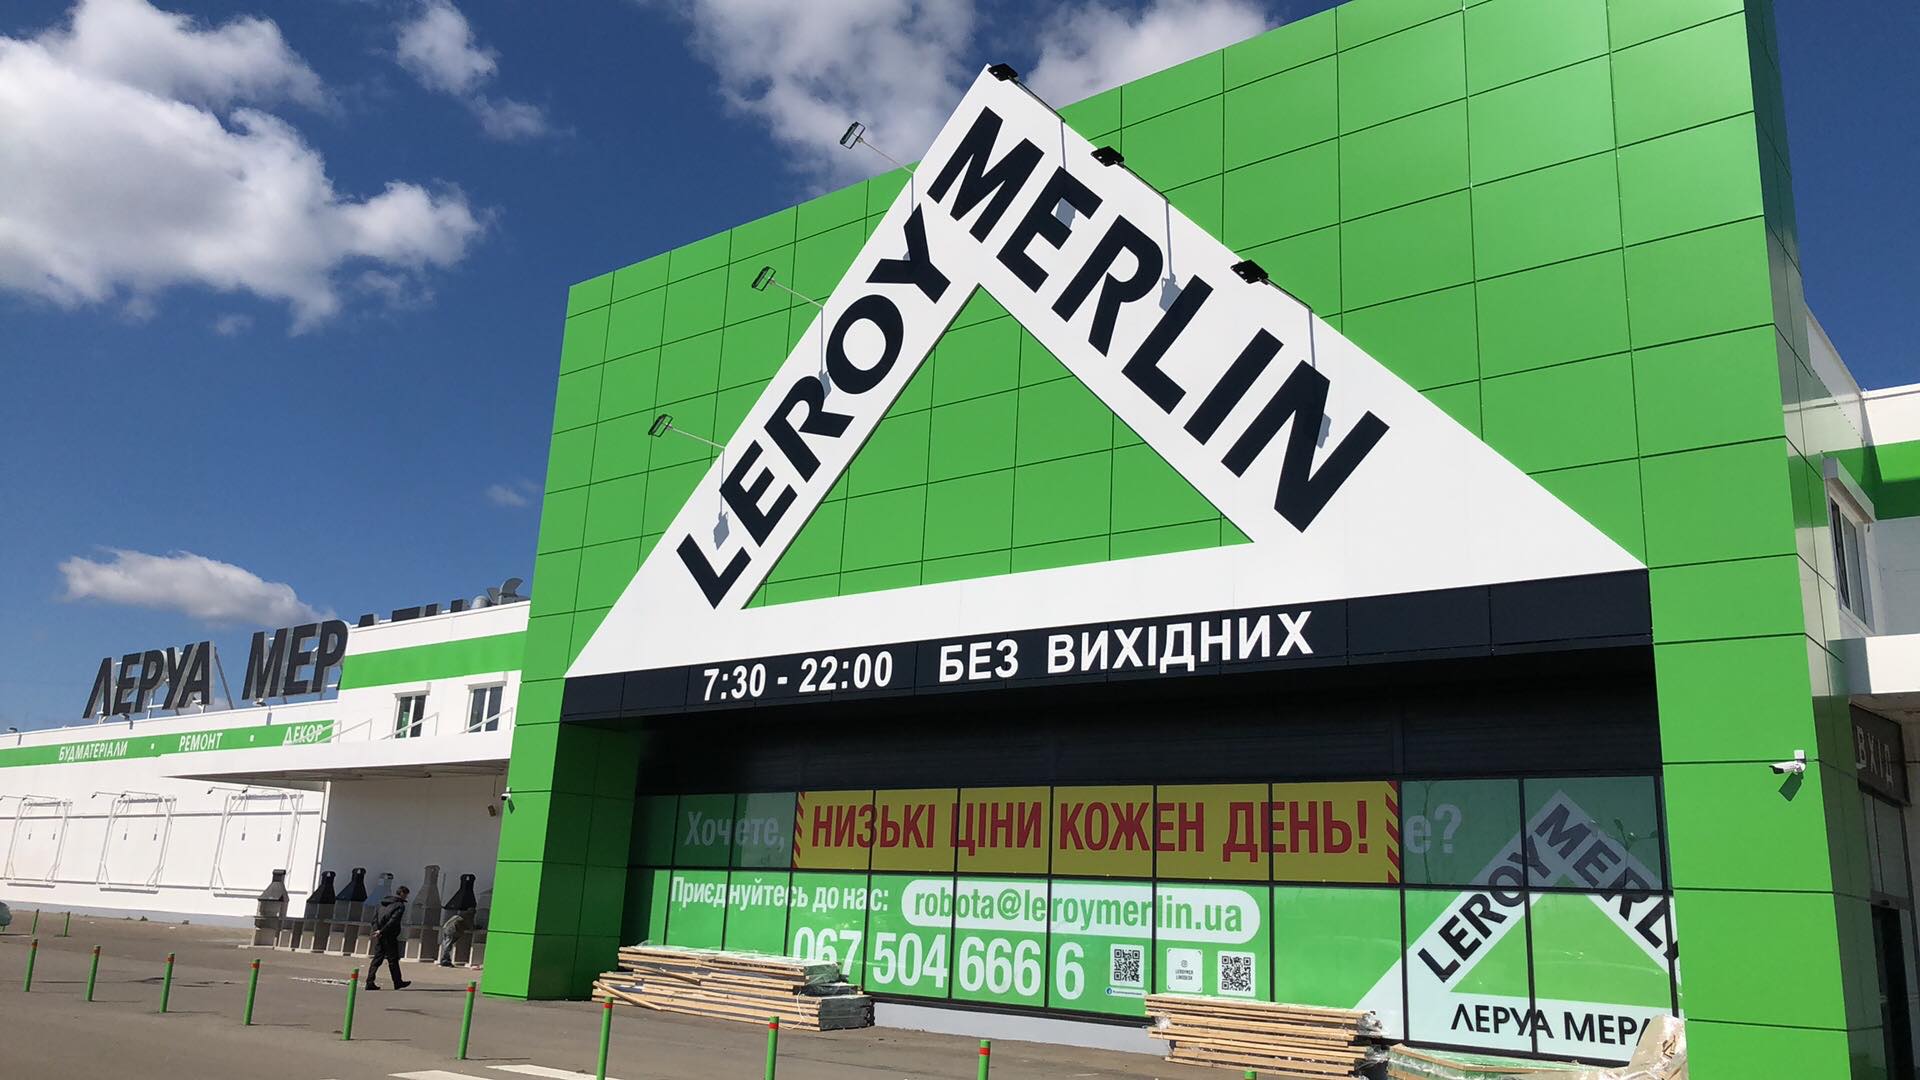 LEROY MERLIN TO OPEN NEW STORE IN KIEV IN 2020